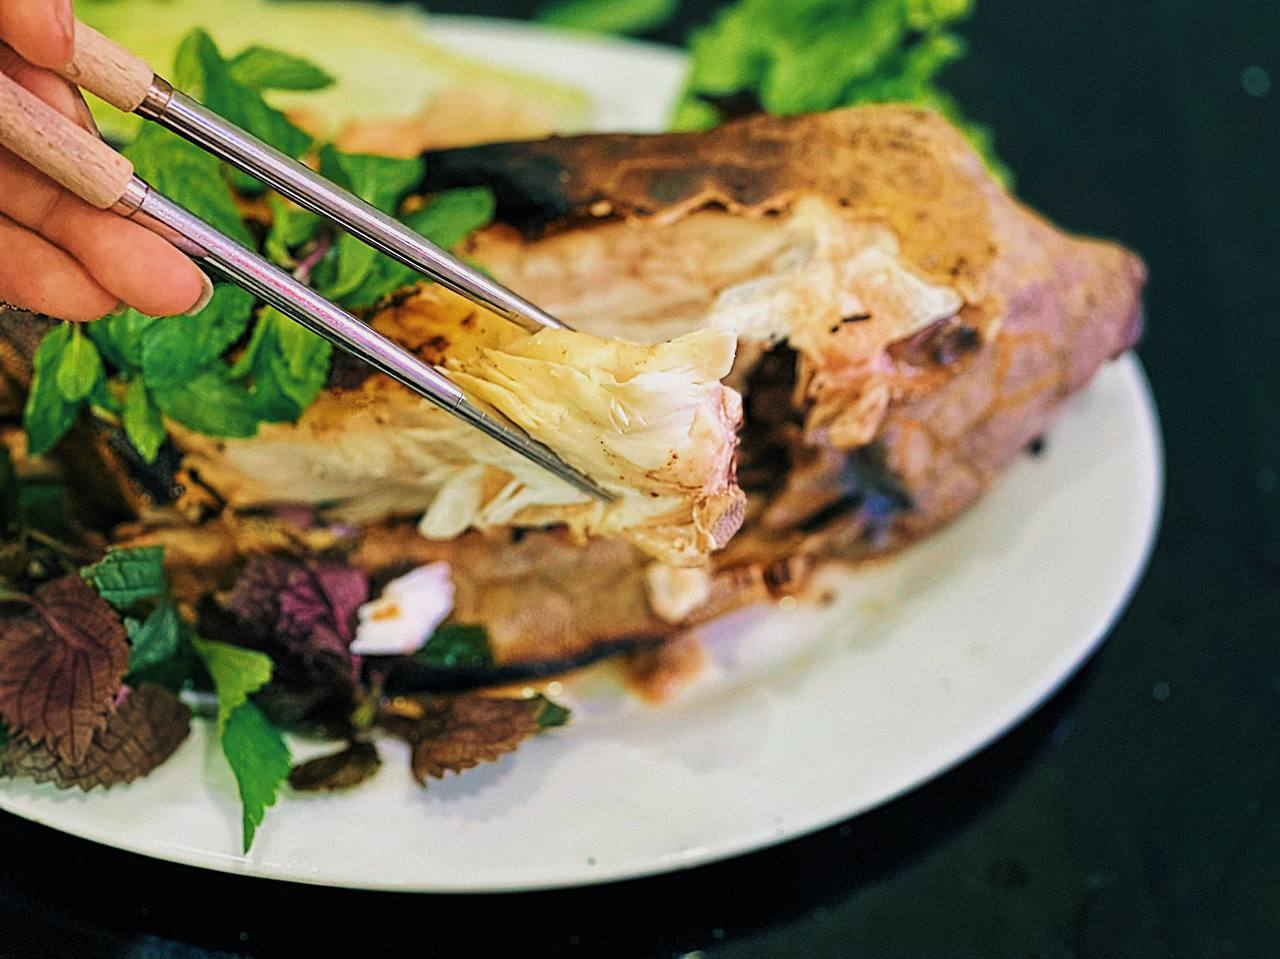 Cá bò hòm nướng - Thớ cá trắng muốt, dai ngọt ẩn sau lớp vỏ gai cứng làm nên đặc sản trác tuyệt - Ảnh 7.